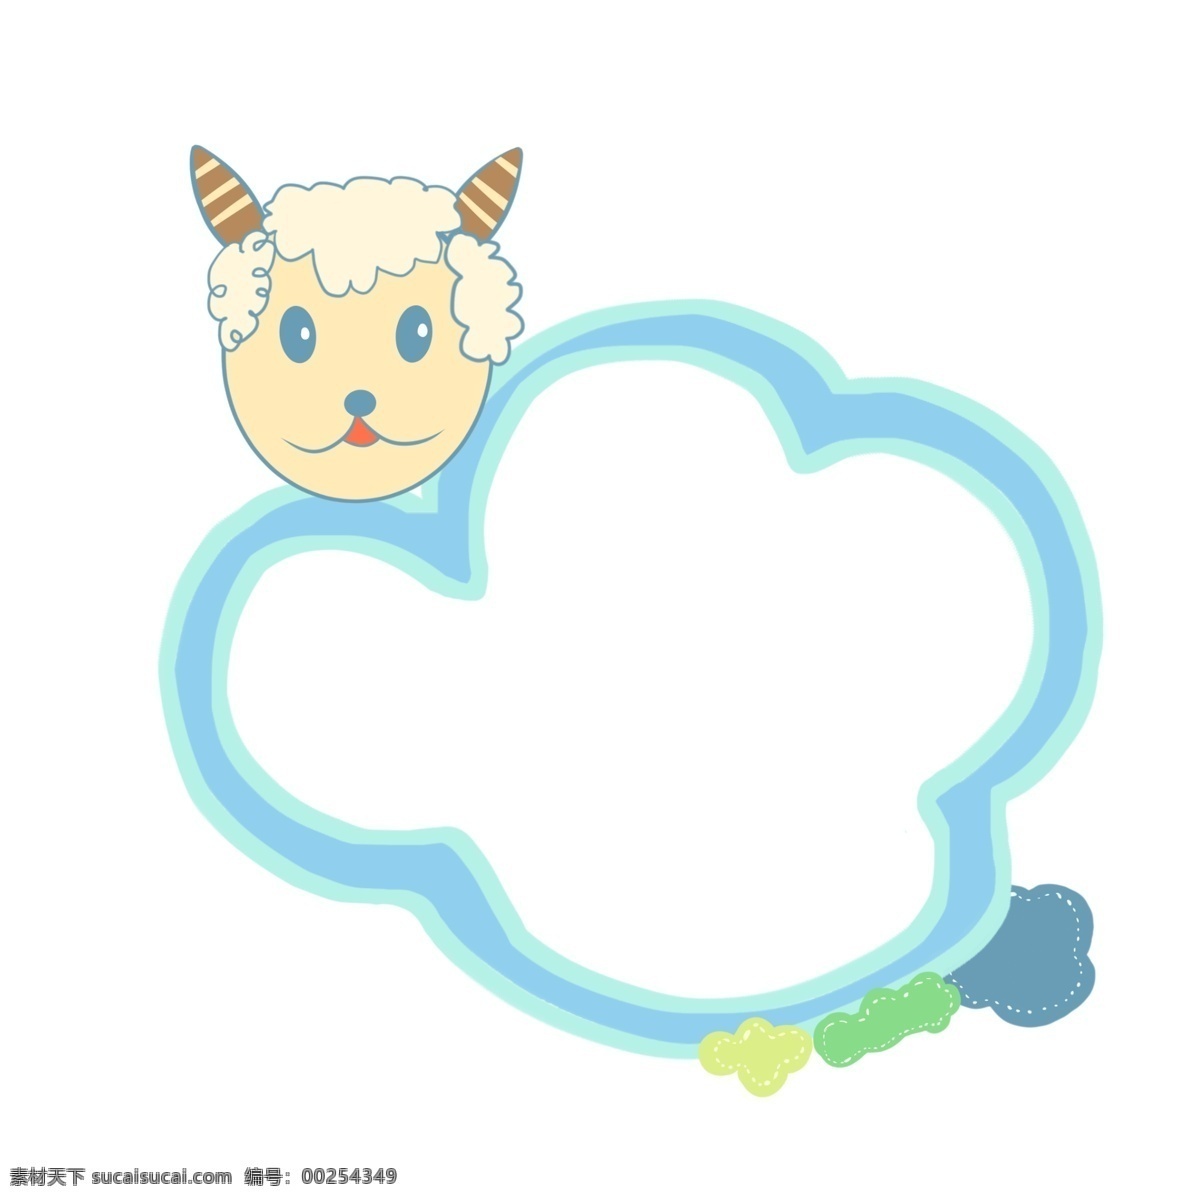 羊头 云朵 边框 插画 卡通边框 蓝色边框 对话框 卡通羊头 彩色云朵 山羊 头 装饰 可爱的羊 云朵边框插画